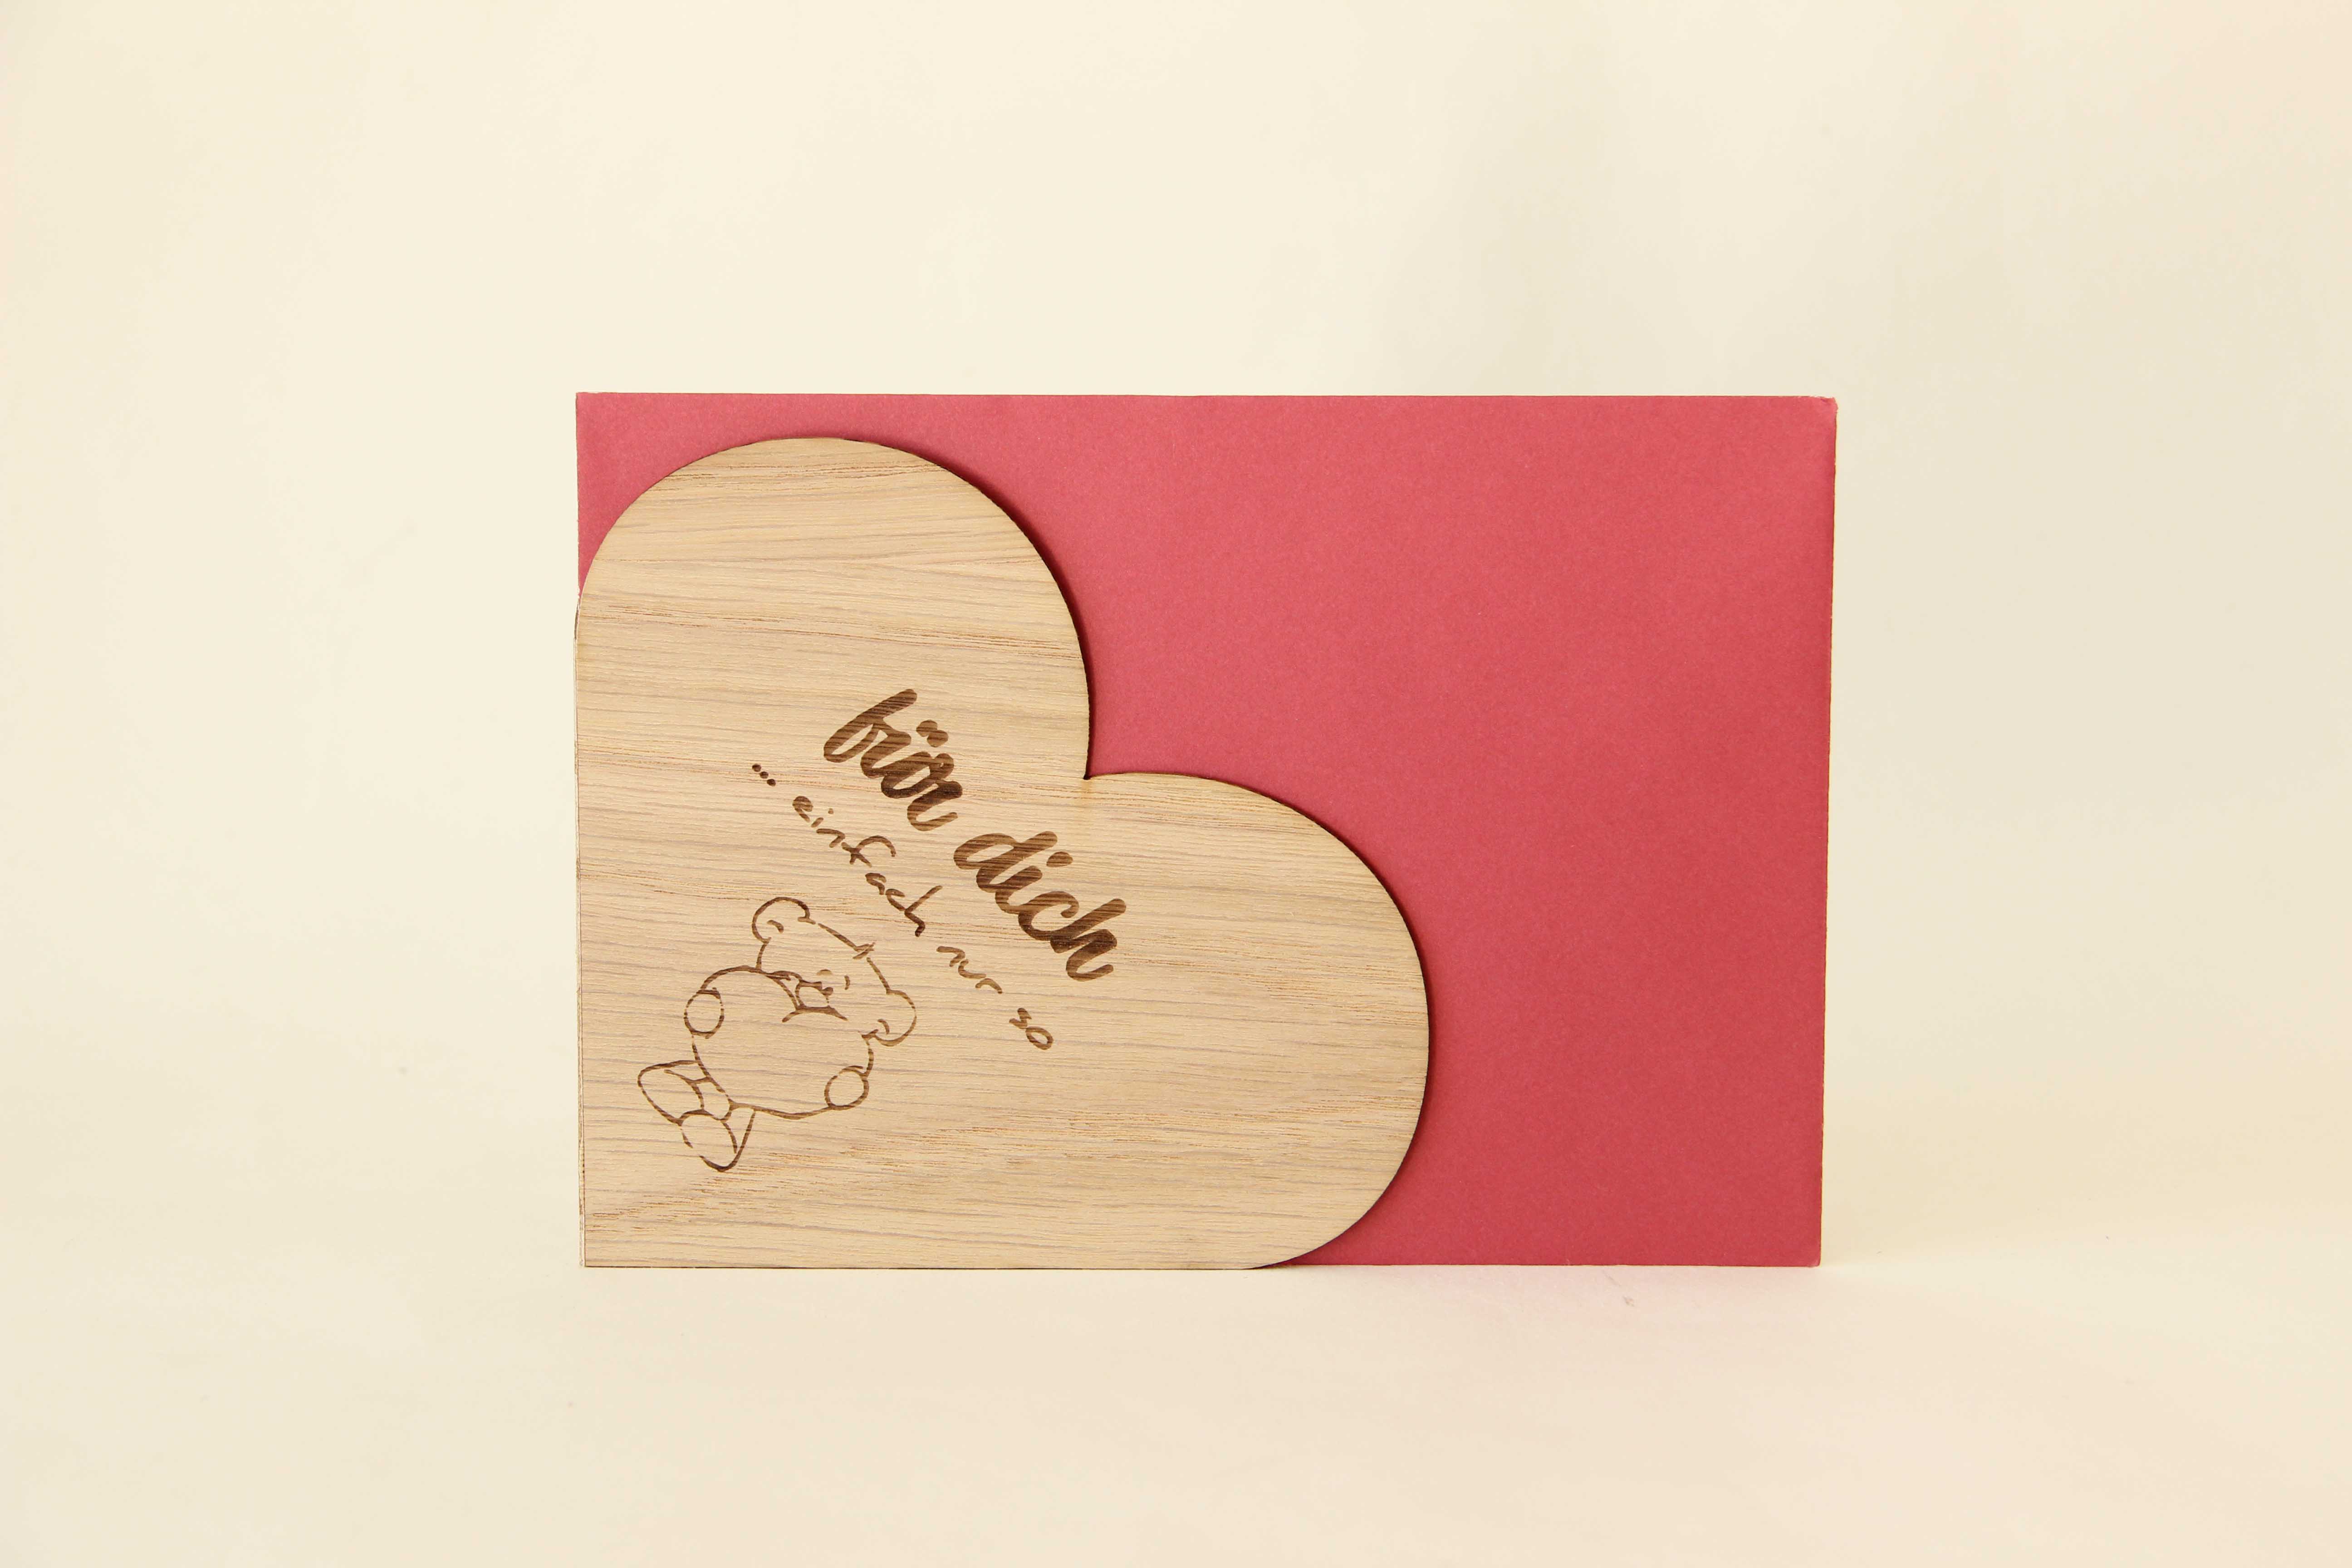 Holzgrusskarten - Herzkarte "Für dich ... einfach nur so" aus Eiche, Teddybär, Herz, Dankeskarte, Geschenkkarte